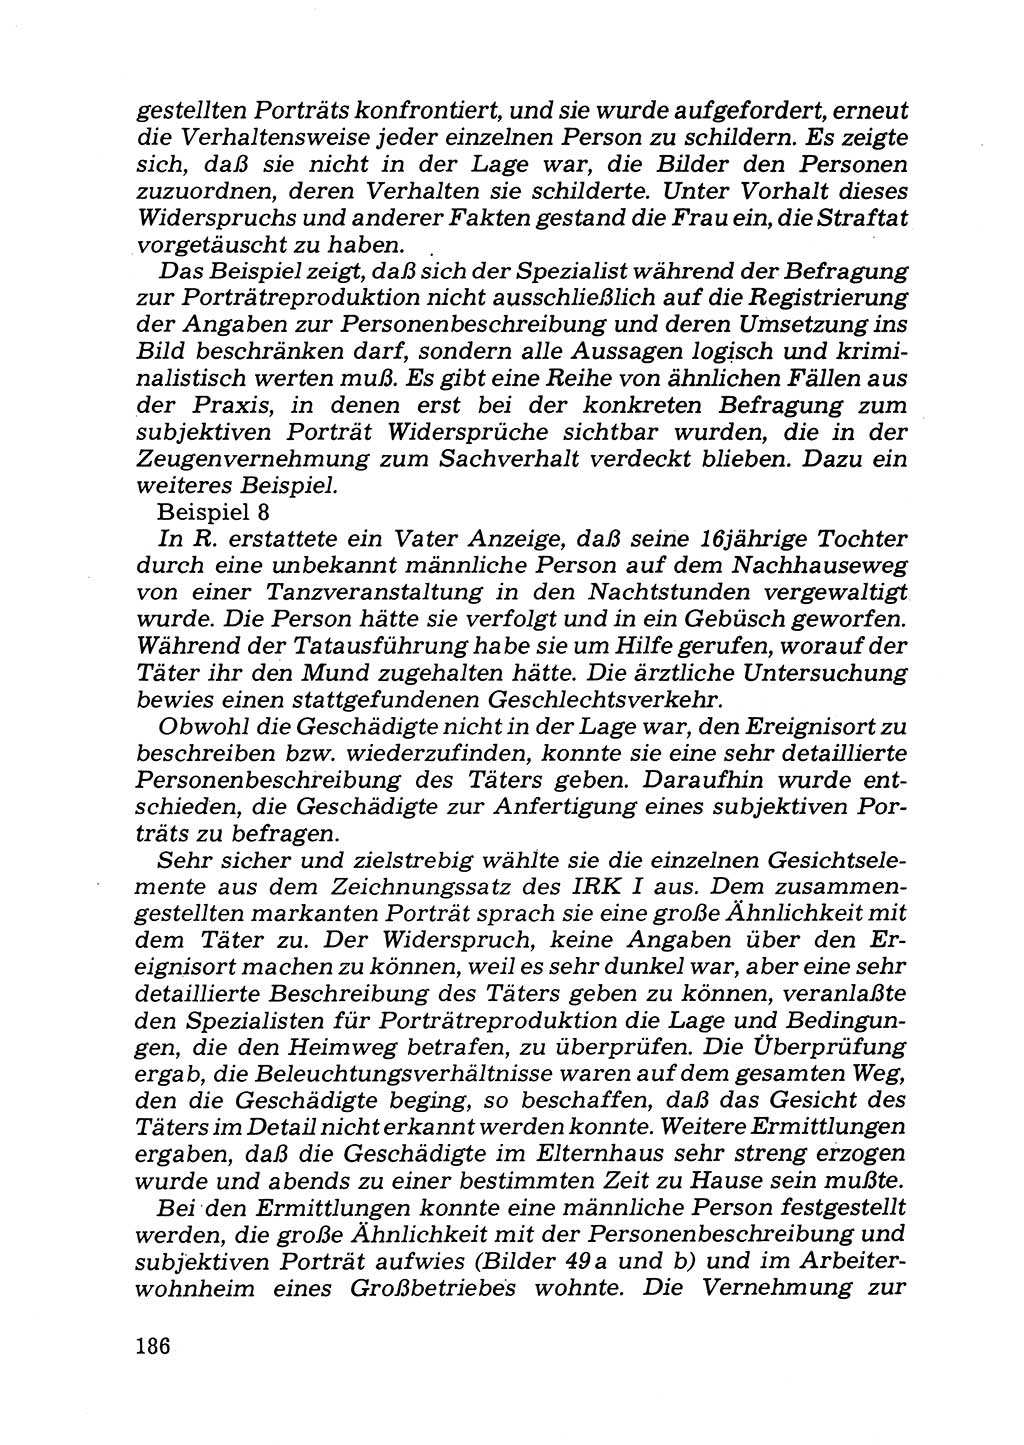 Das subjektive Porträt [Deutsche Demokratische Republik (DDR)] 1981, Seite 186 (Subj. Port. DDR 1981, S. 186)